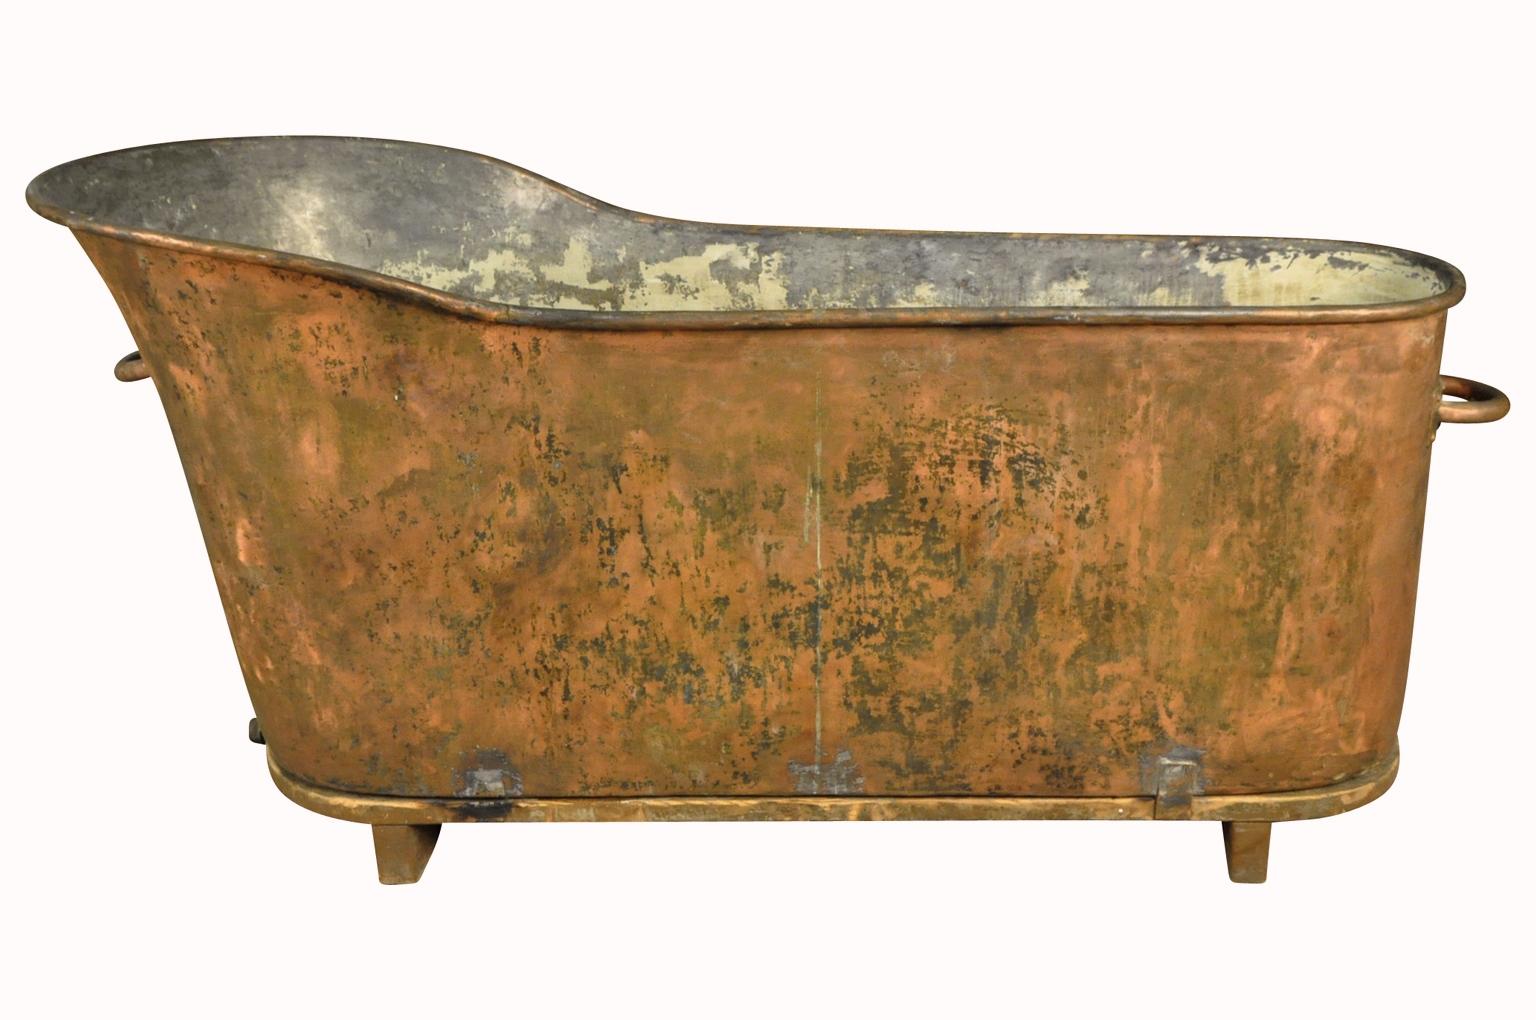 Eine fabelhafte Badewanne aus dem 19. Jahrhundert aus Südfrankreich. Wunderschön aus schwerem Kupfer gefertigt und auf einer Holzplattform aufgestellt. Sie eignet sich nicht nur als Badewanne, sondern auch als Übertopf oder zum Kühlen von Getränken